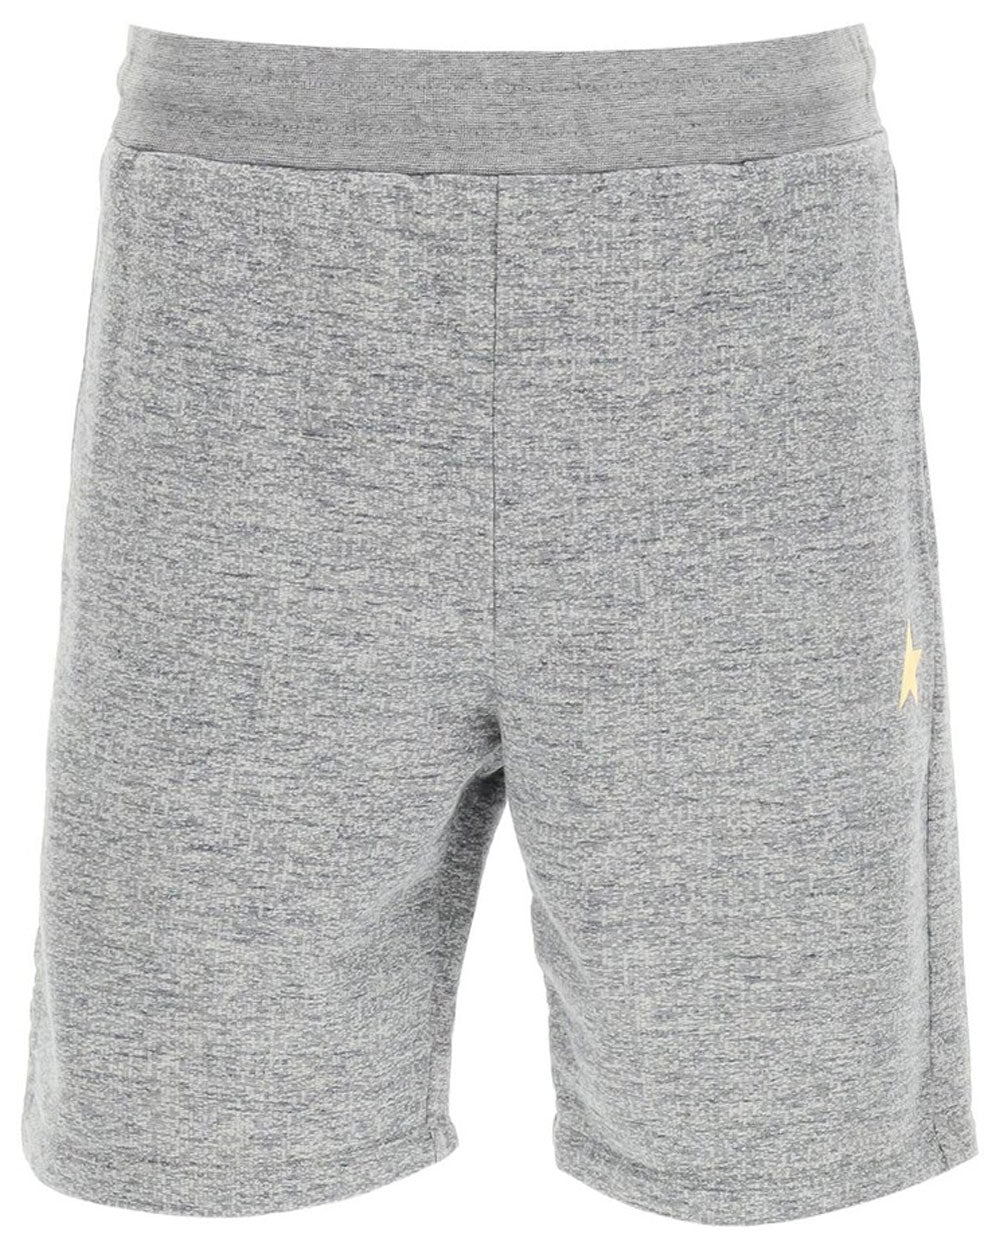 Grey Melange Lounge Shorts